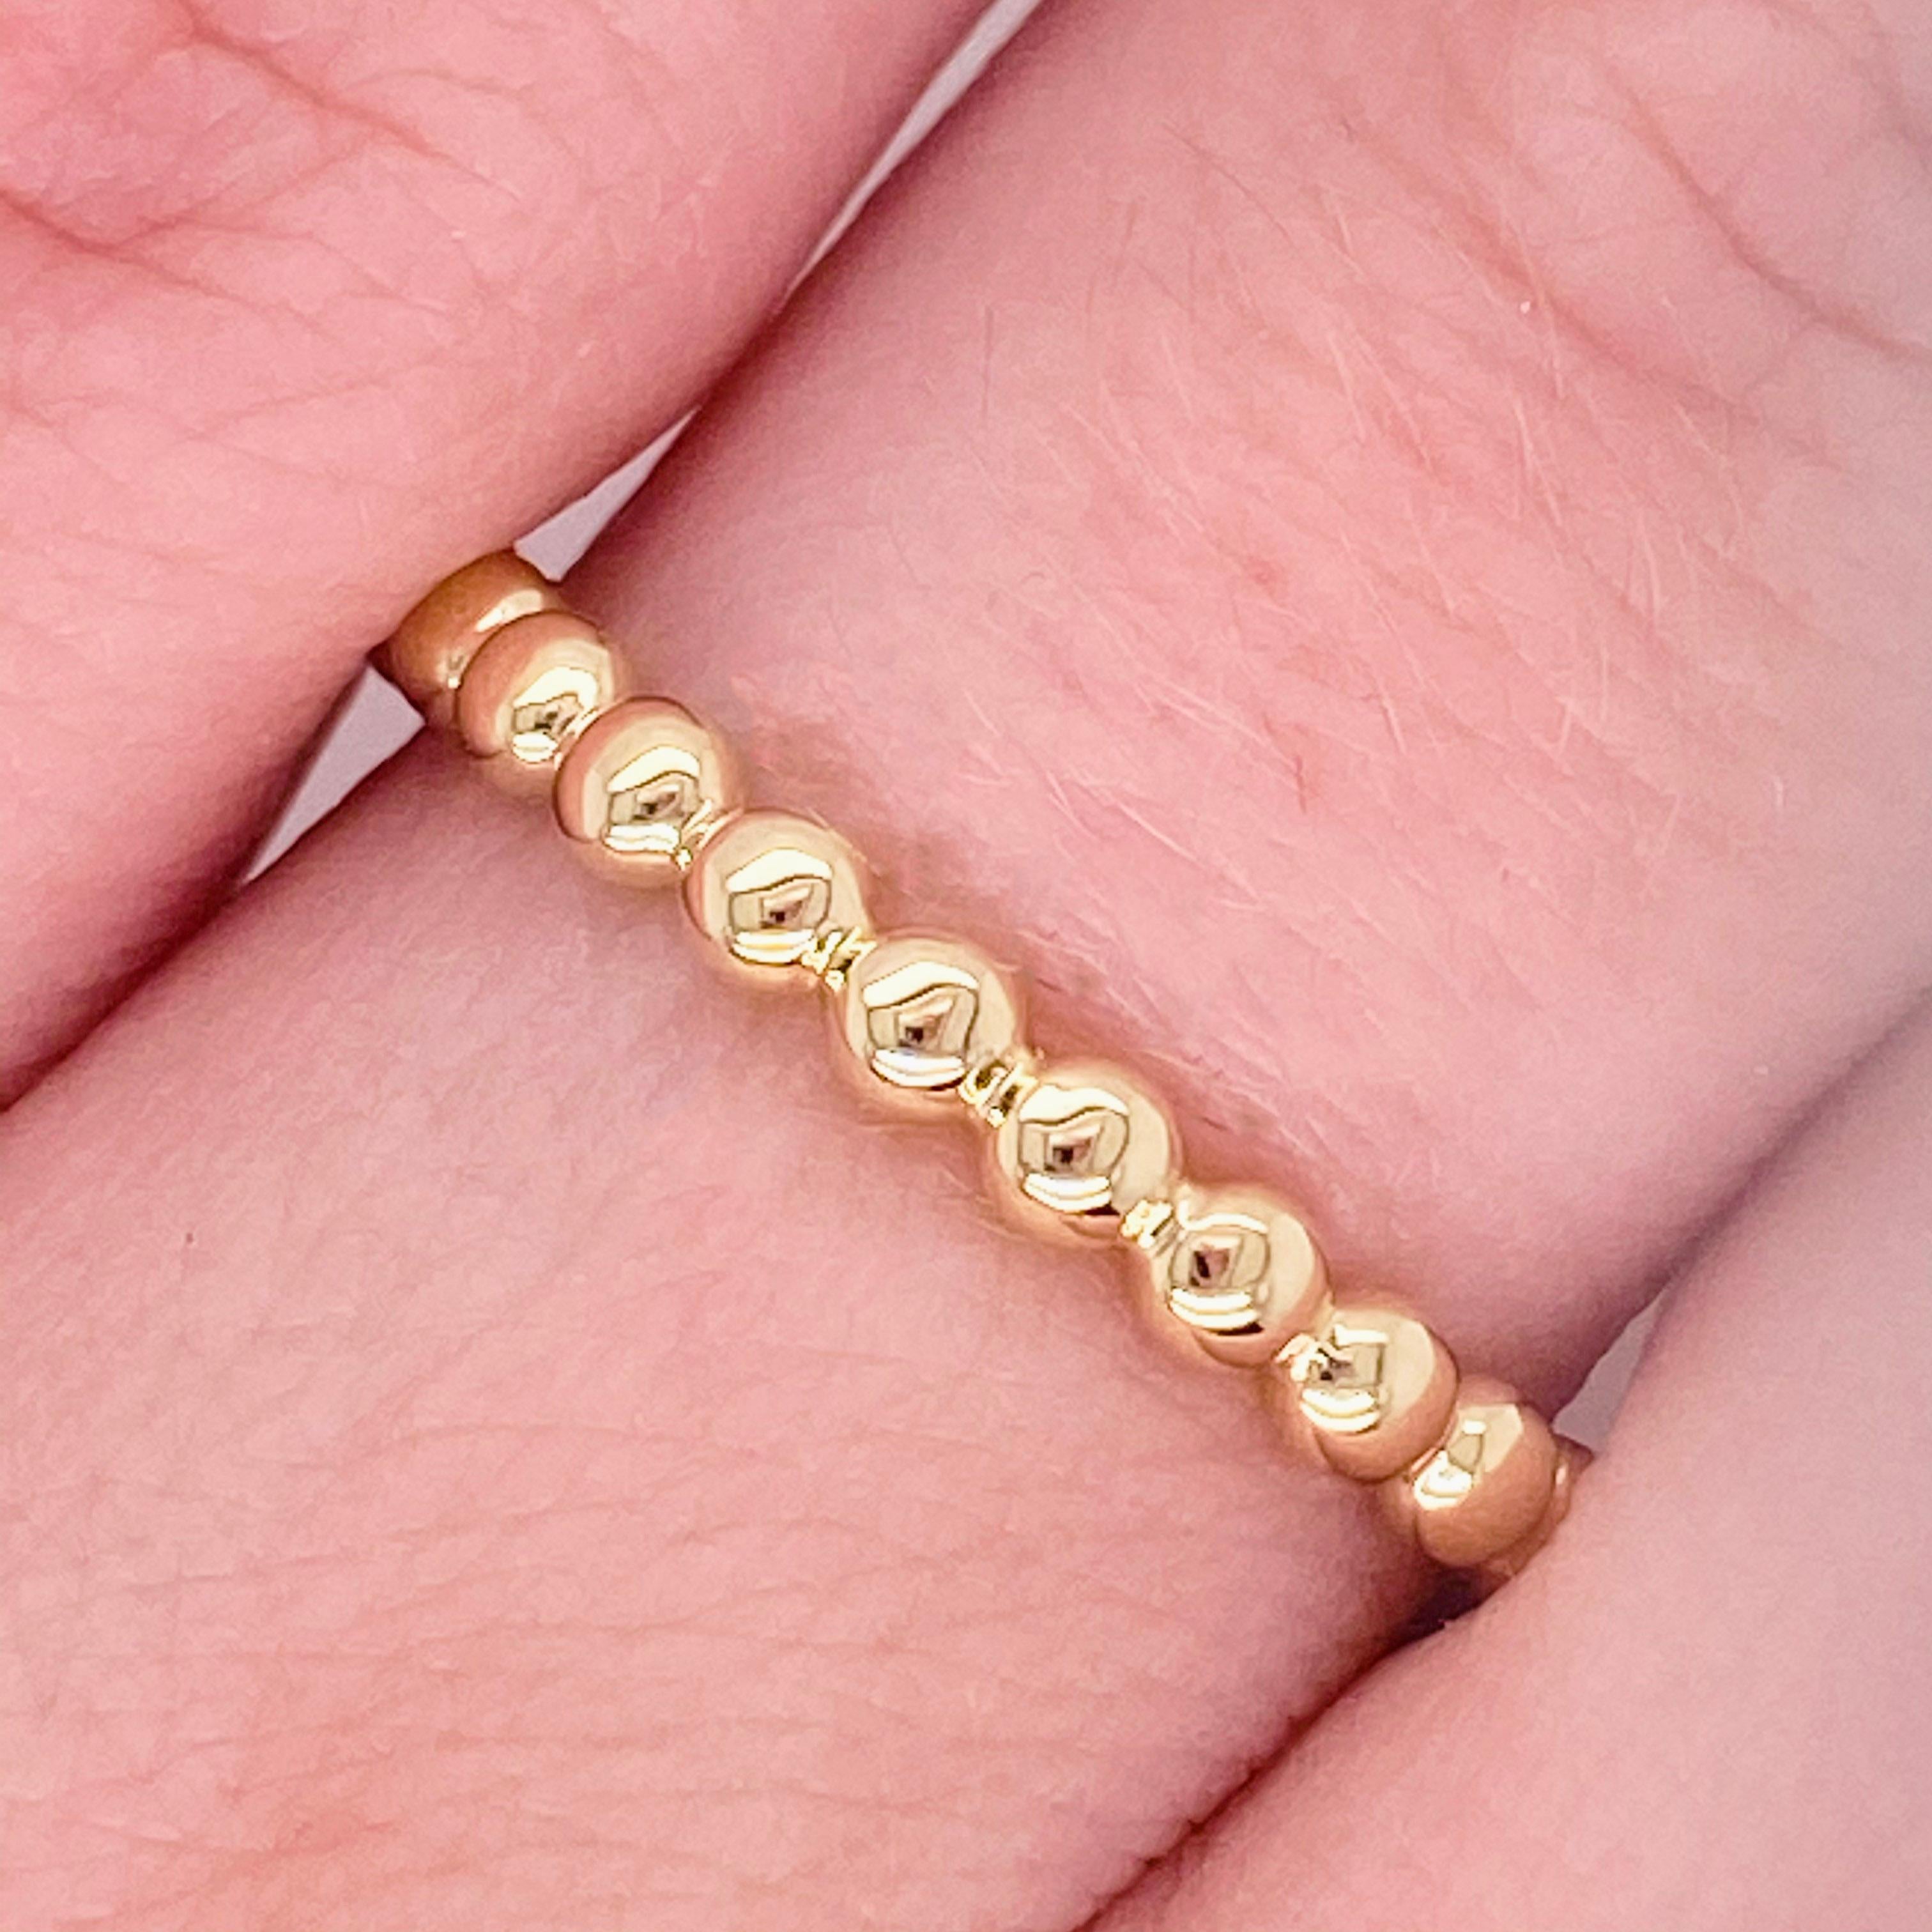 Ce joli bracelet présente un magnifique motif perlé ! Accentuée par le bel or jaune 14 carats, cette bague est un incroyable bracelet mode et un bracelet empilable !  Il se marie bien avec la plupart des bagues de fiançailles et des alliances ! 